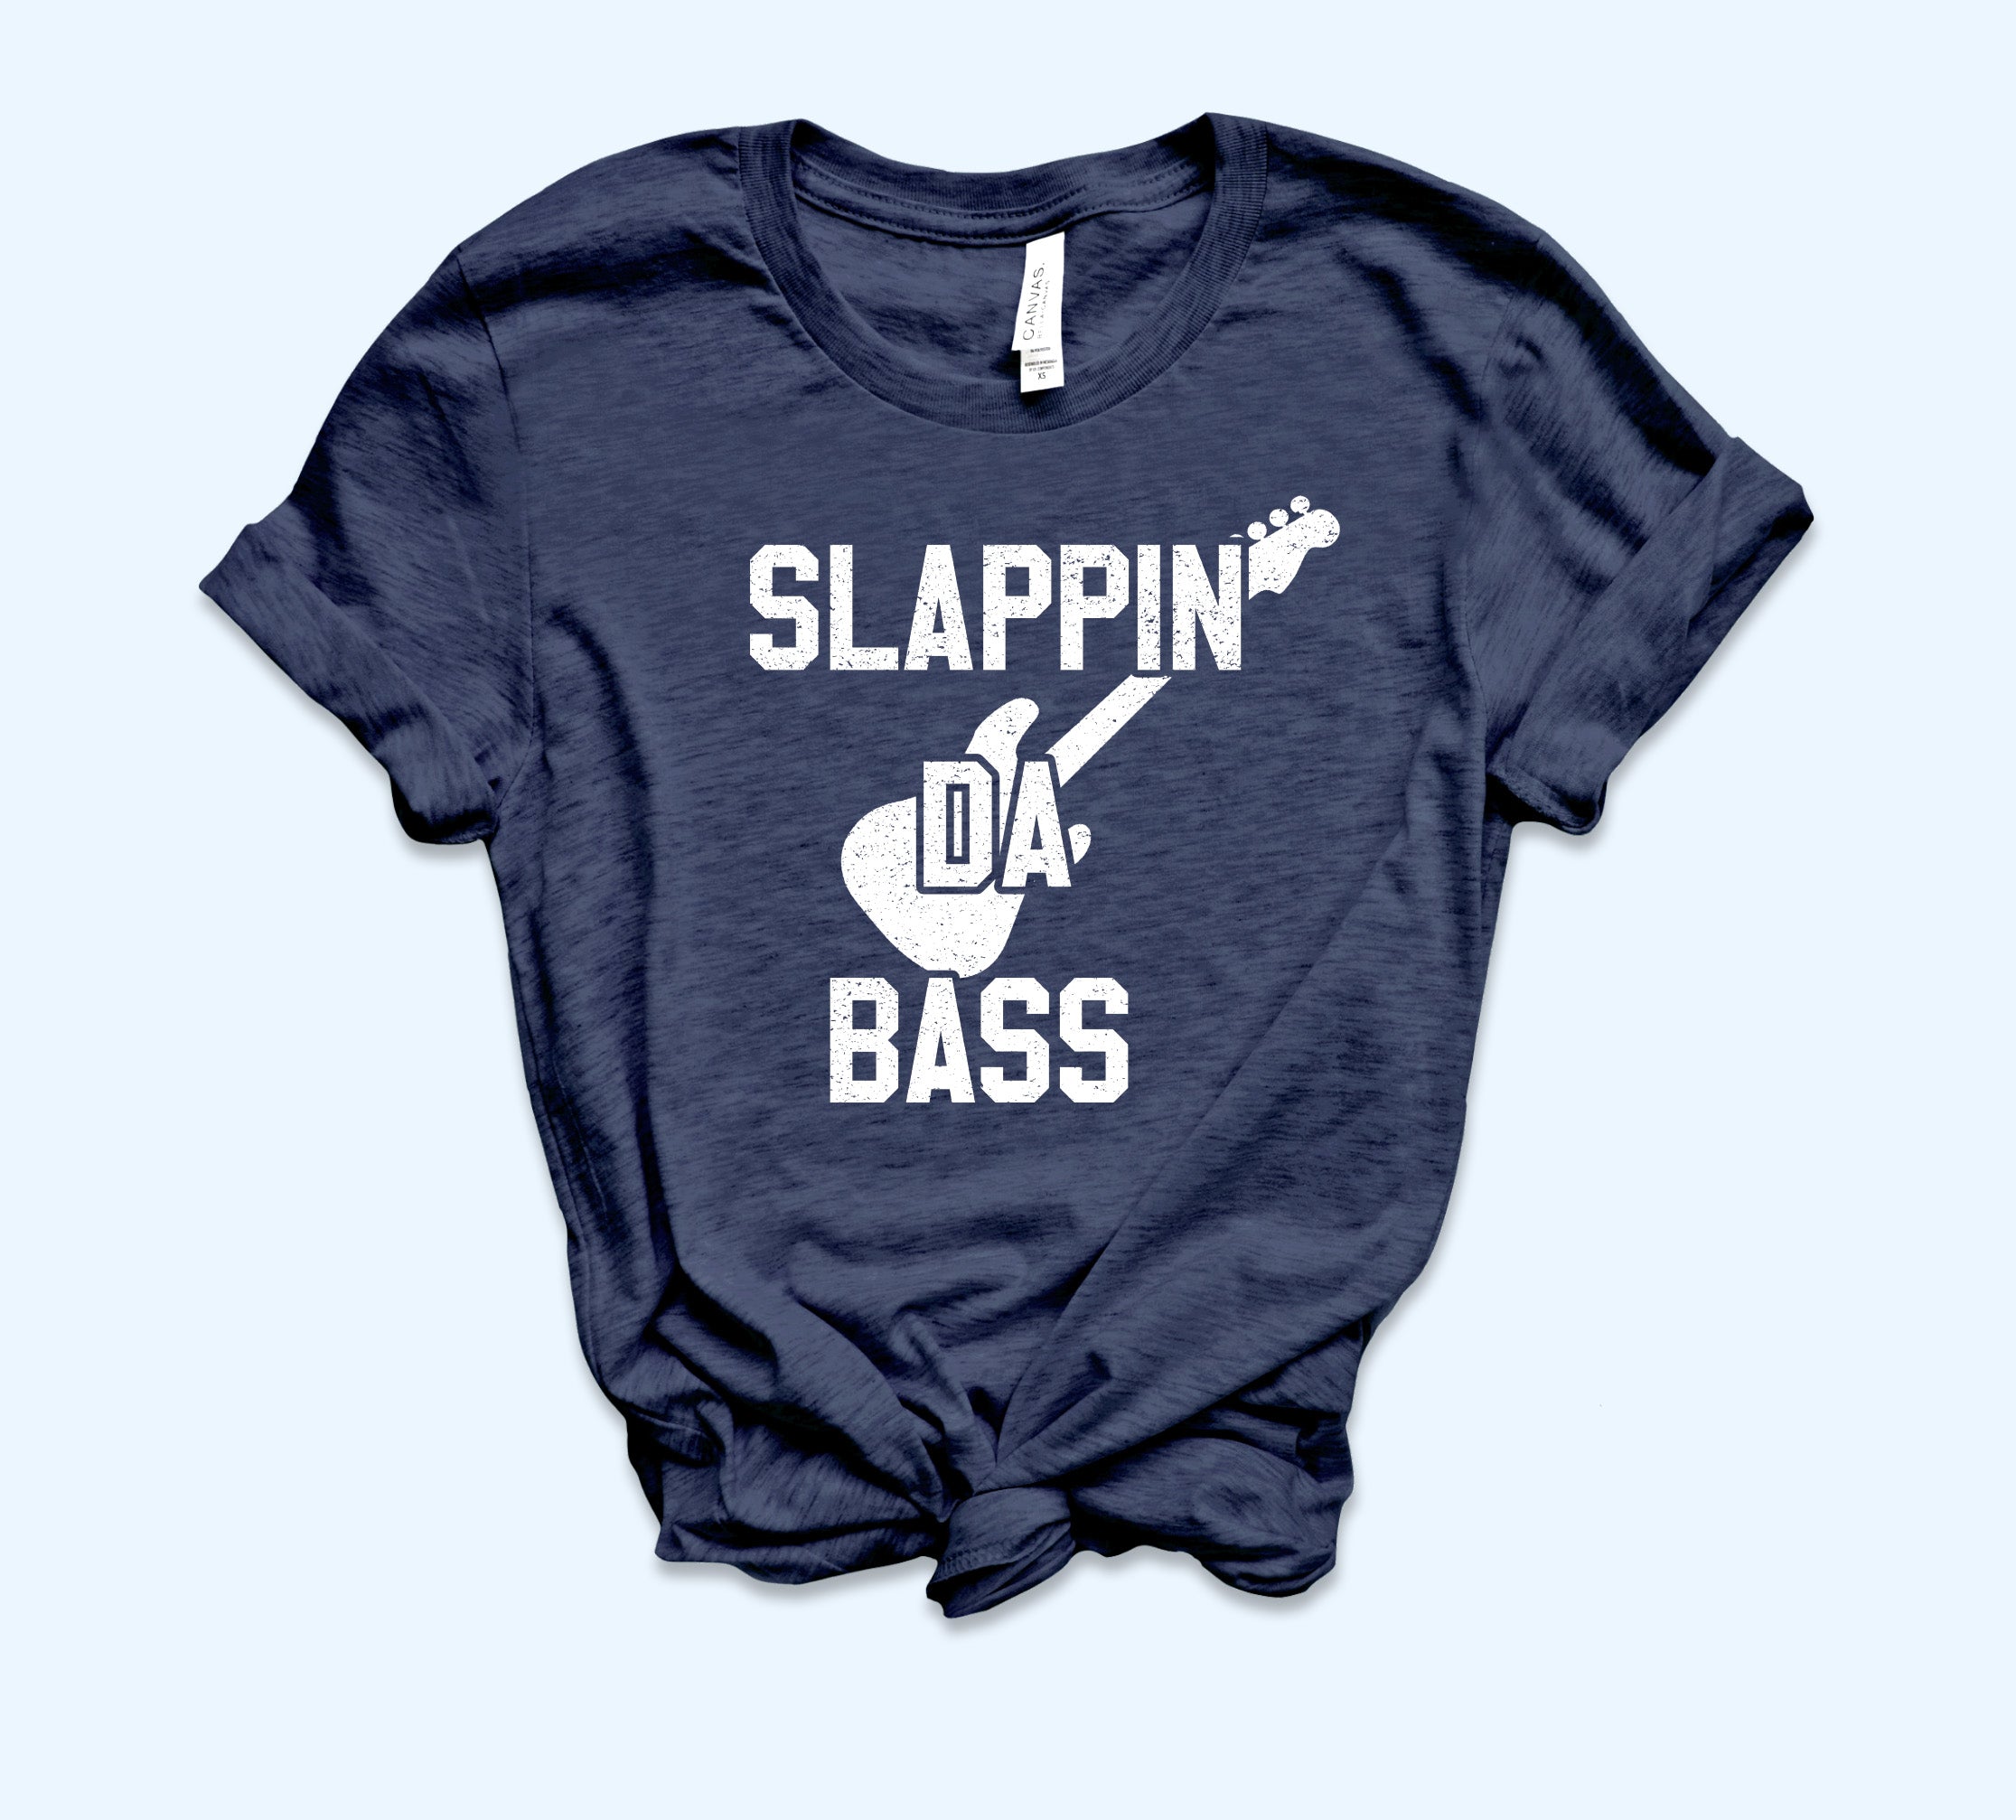 Slappin Da Bass Shirt - I Love You Man Shirt - Bass Player Shirt